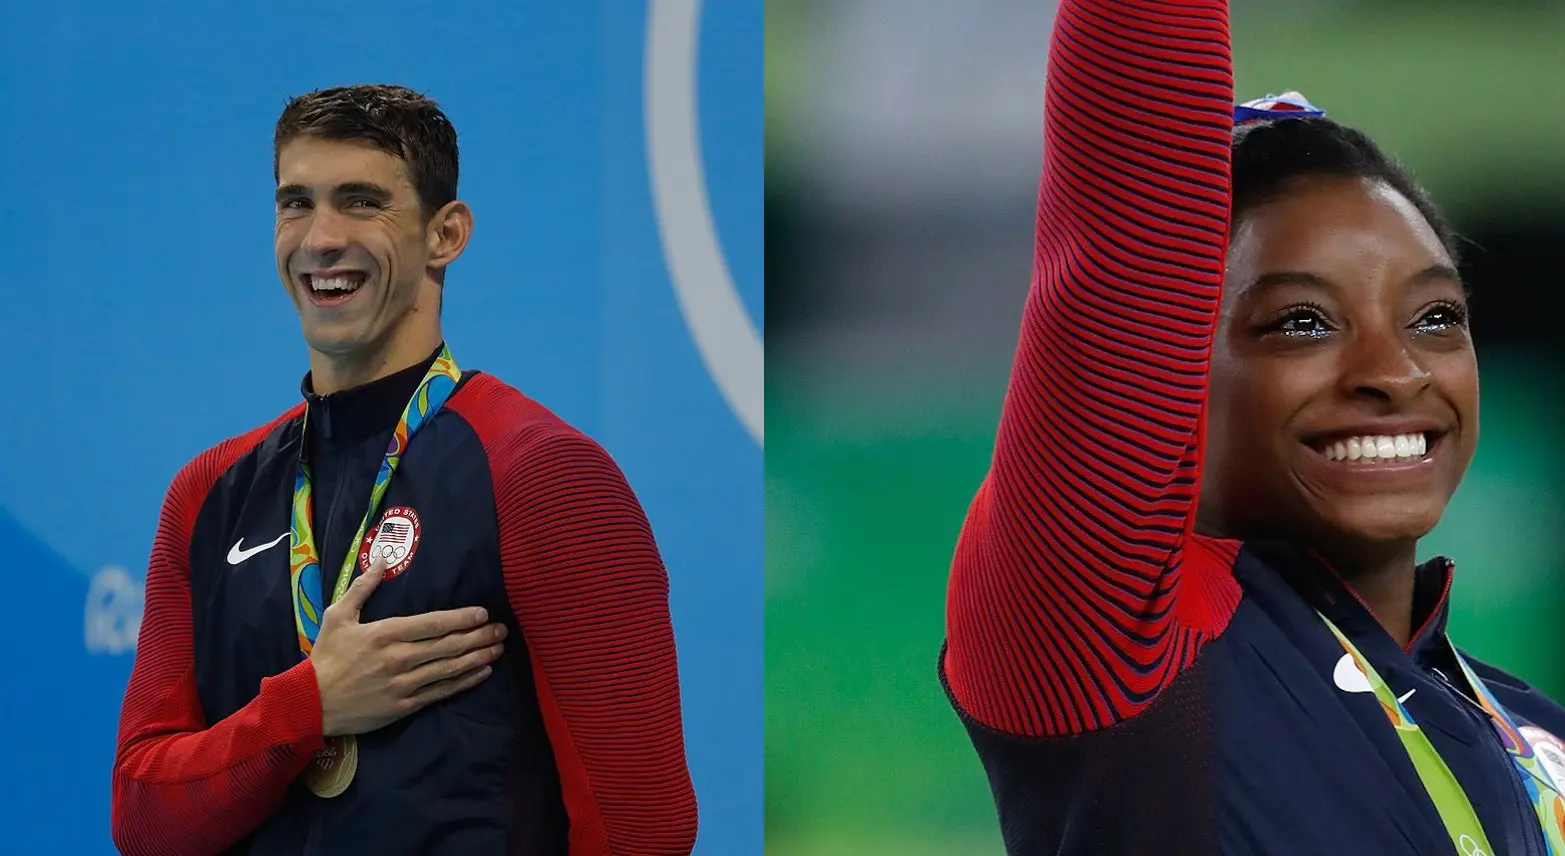 De Michael Phelps à Simone Biles : quand les athlètes brisent le tabou de la santé mentale